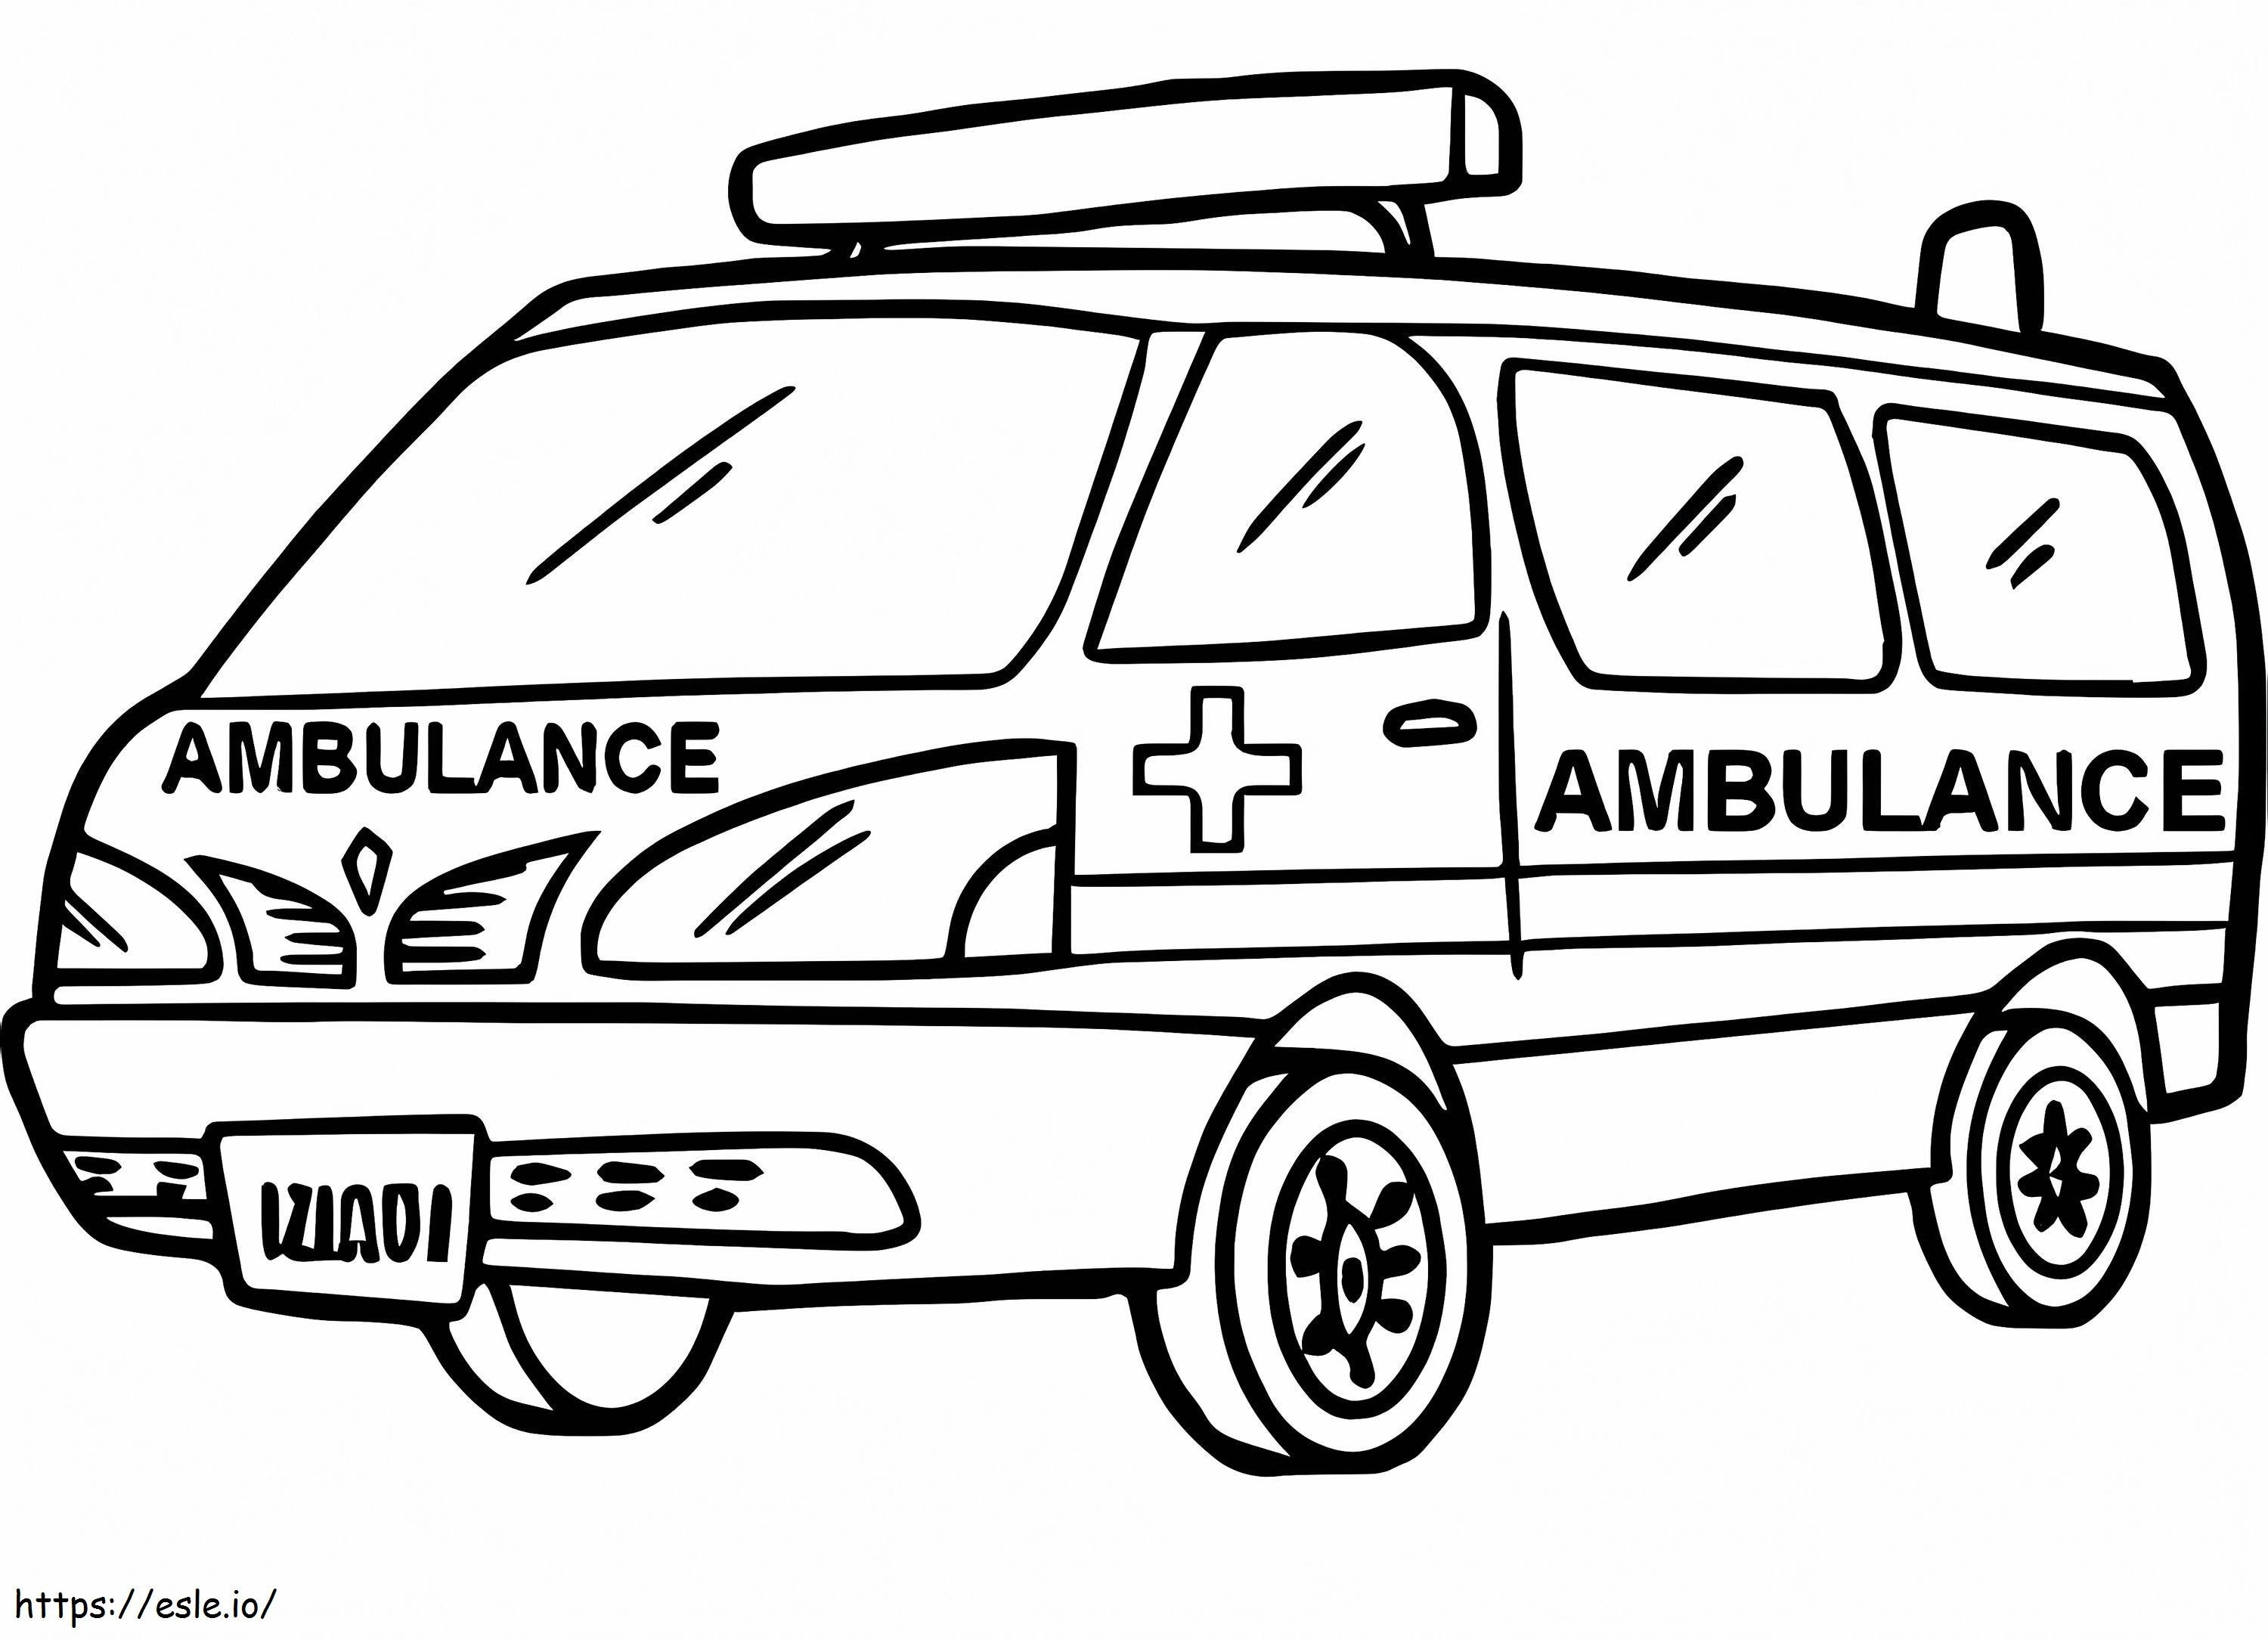 Ambulance 14 coloring page